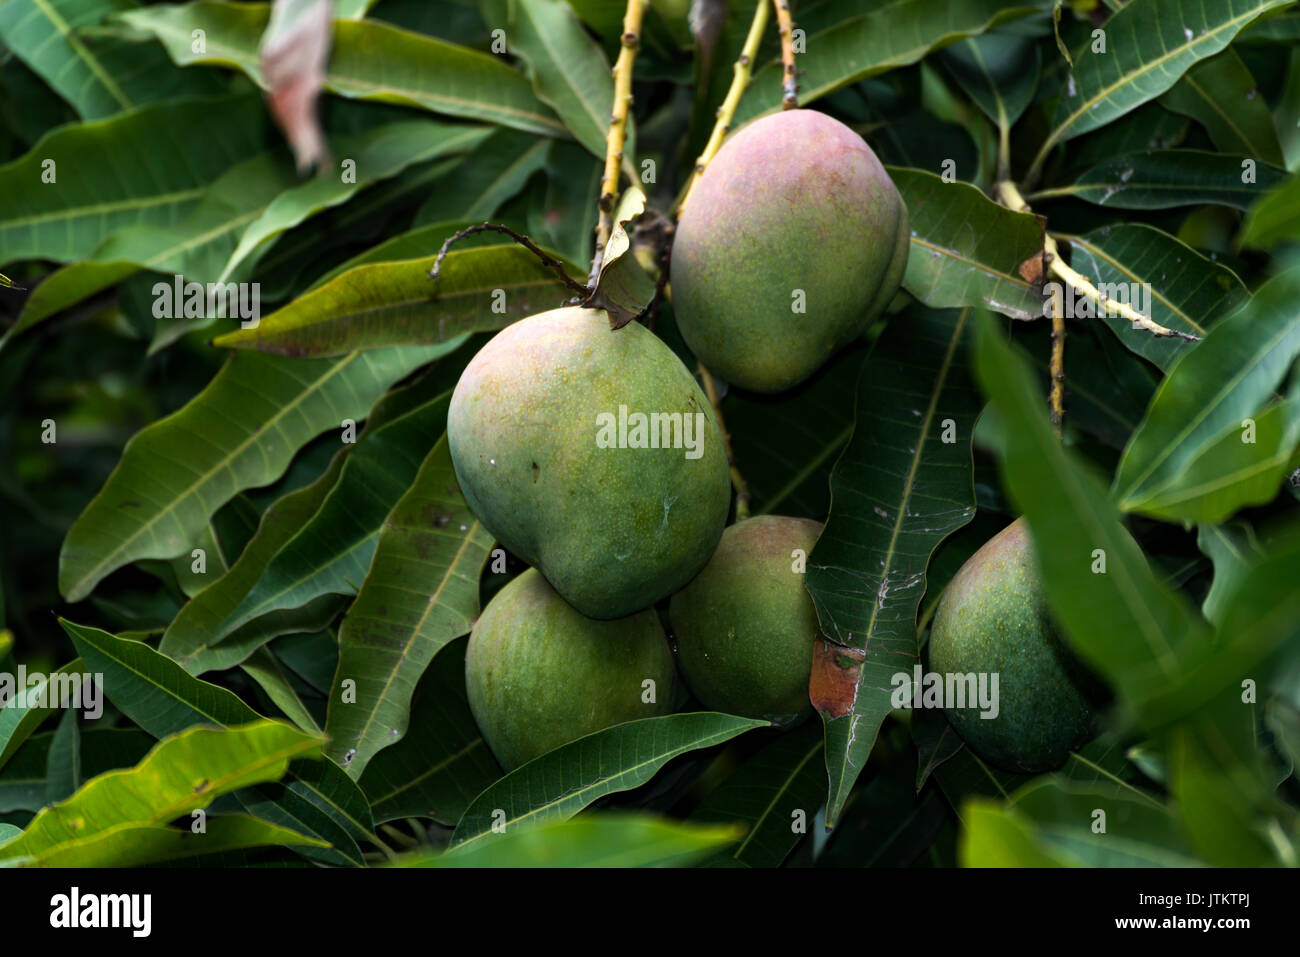 Bündel von Grün und Gelb reife Mango auf Baum in Addis Abeba, Äthiopien  Stockfotografie - Alamy